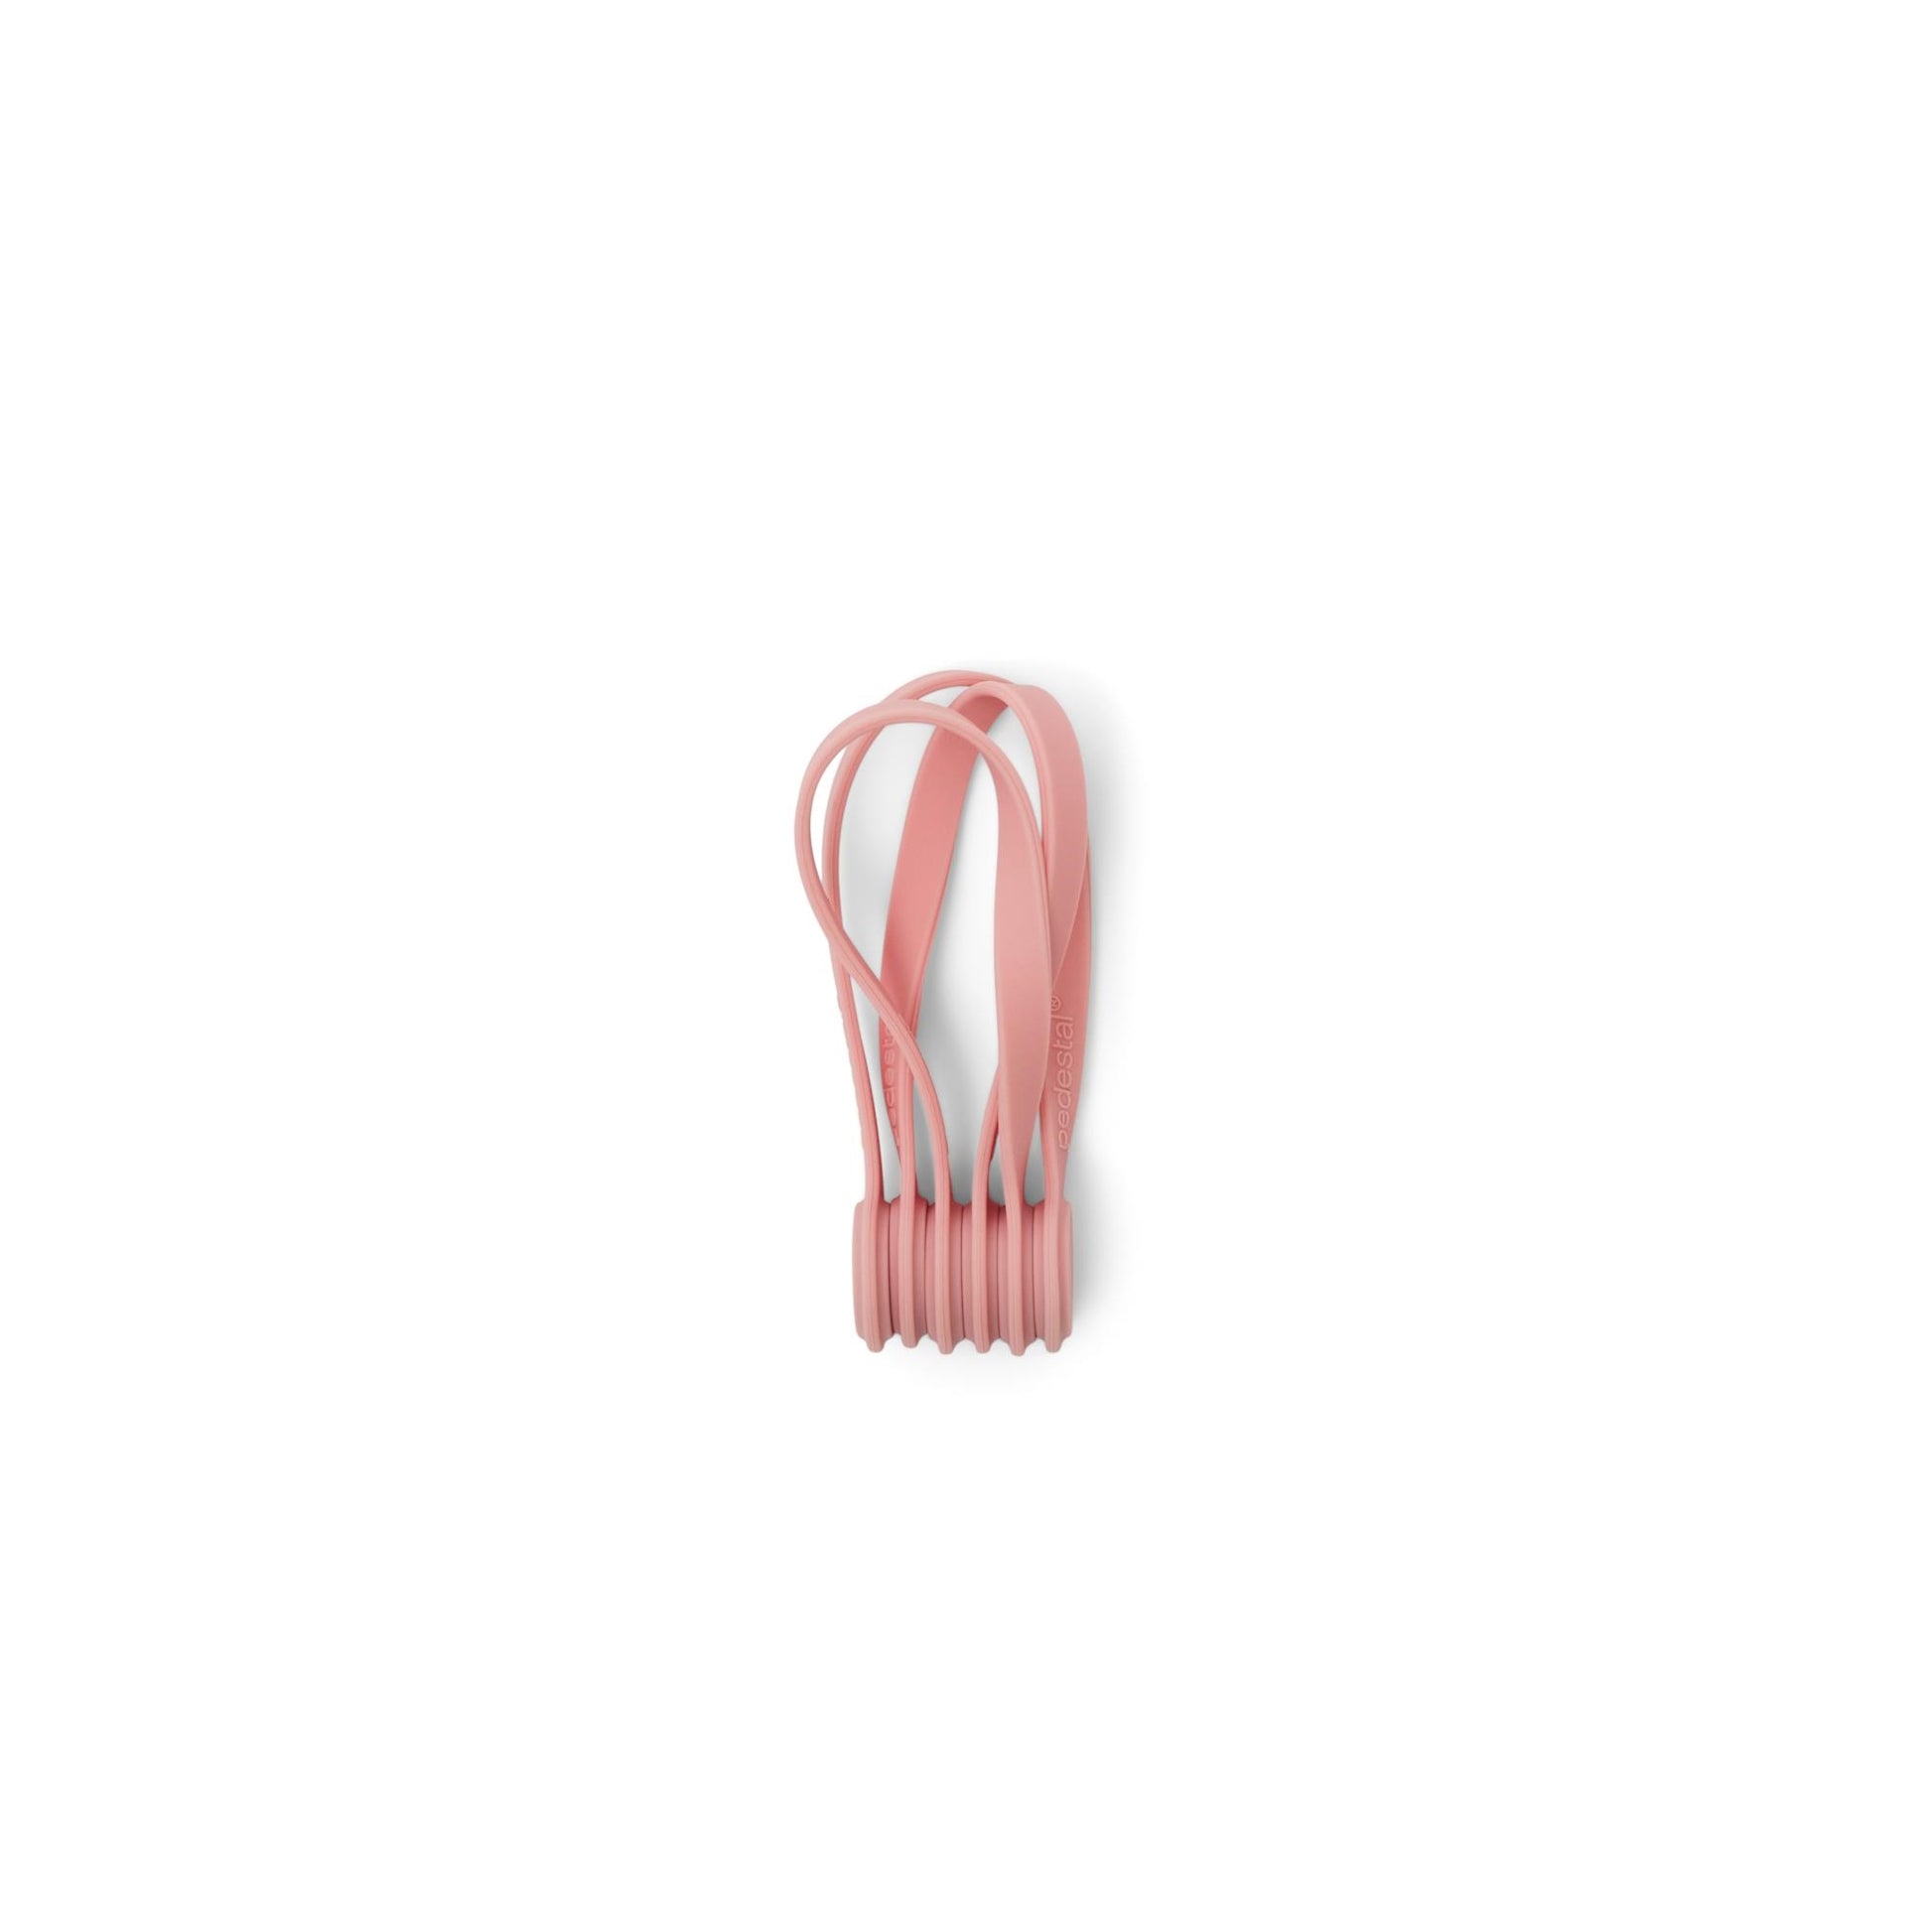 Cable Tie Magnetic by Pedestal #Bubble Gum